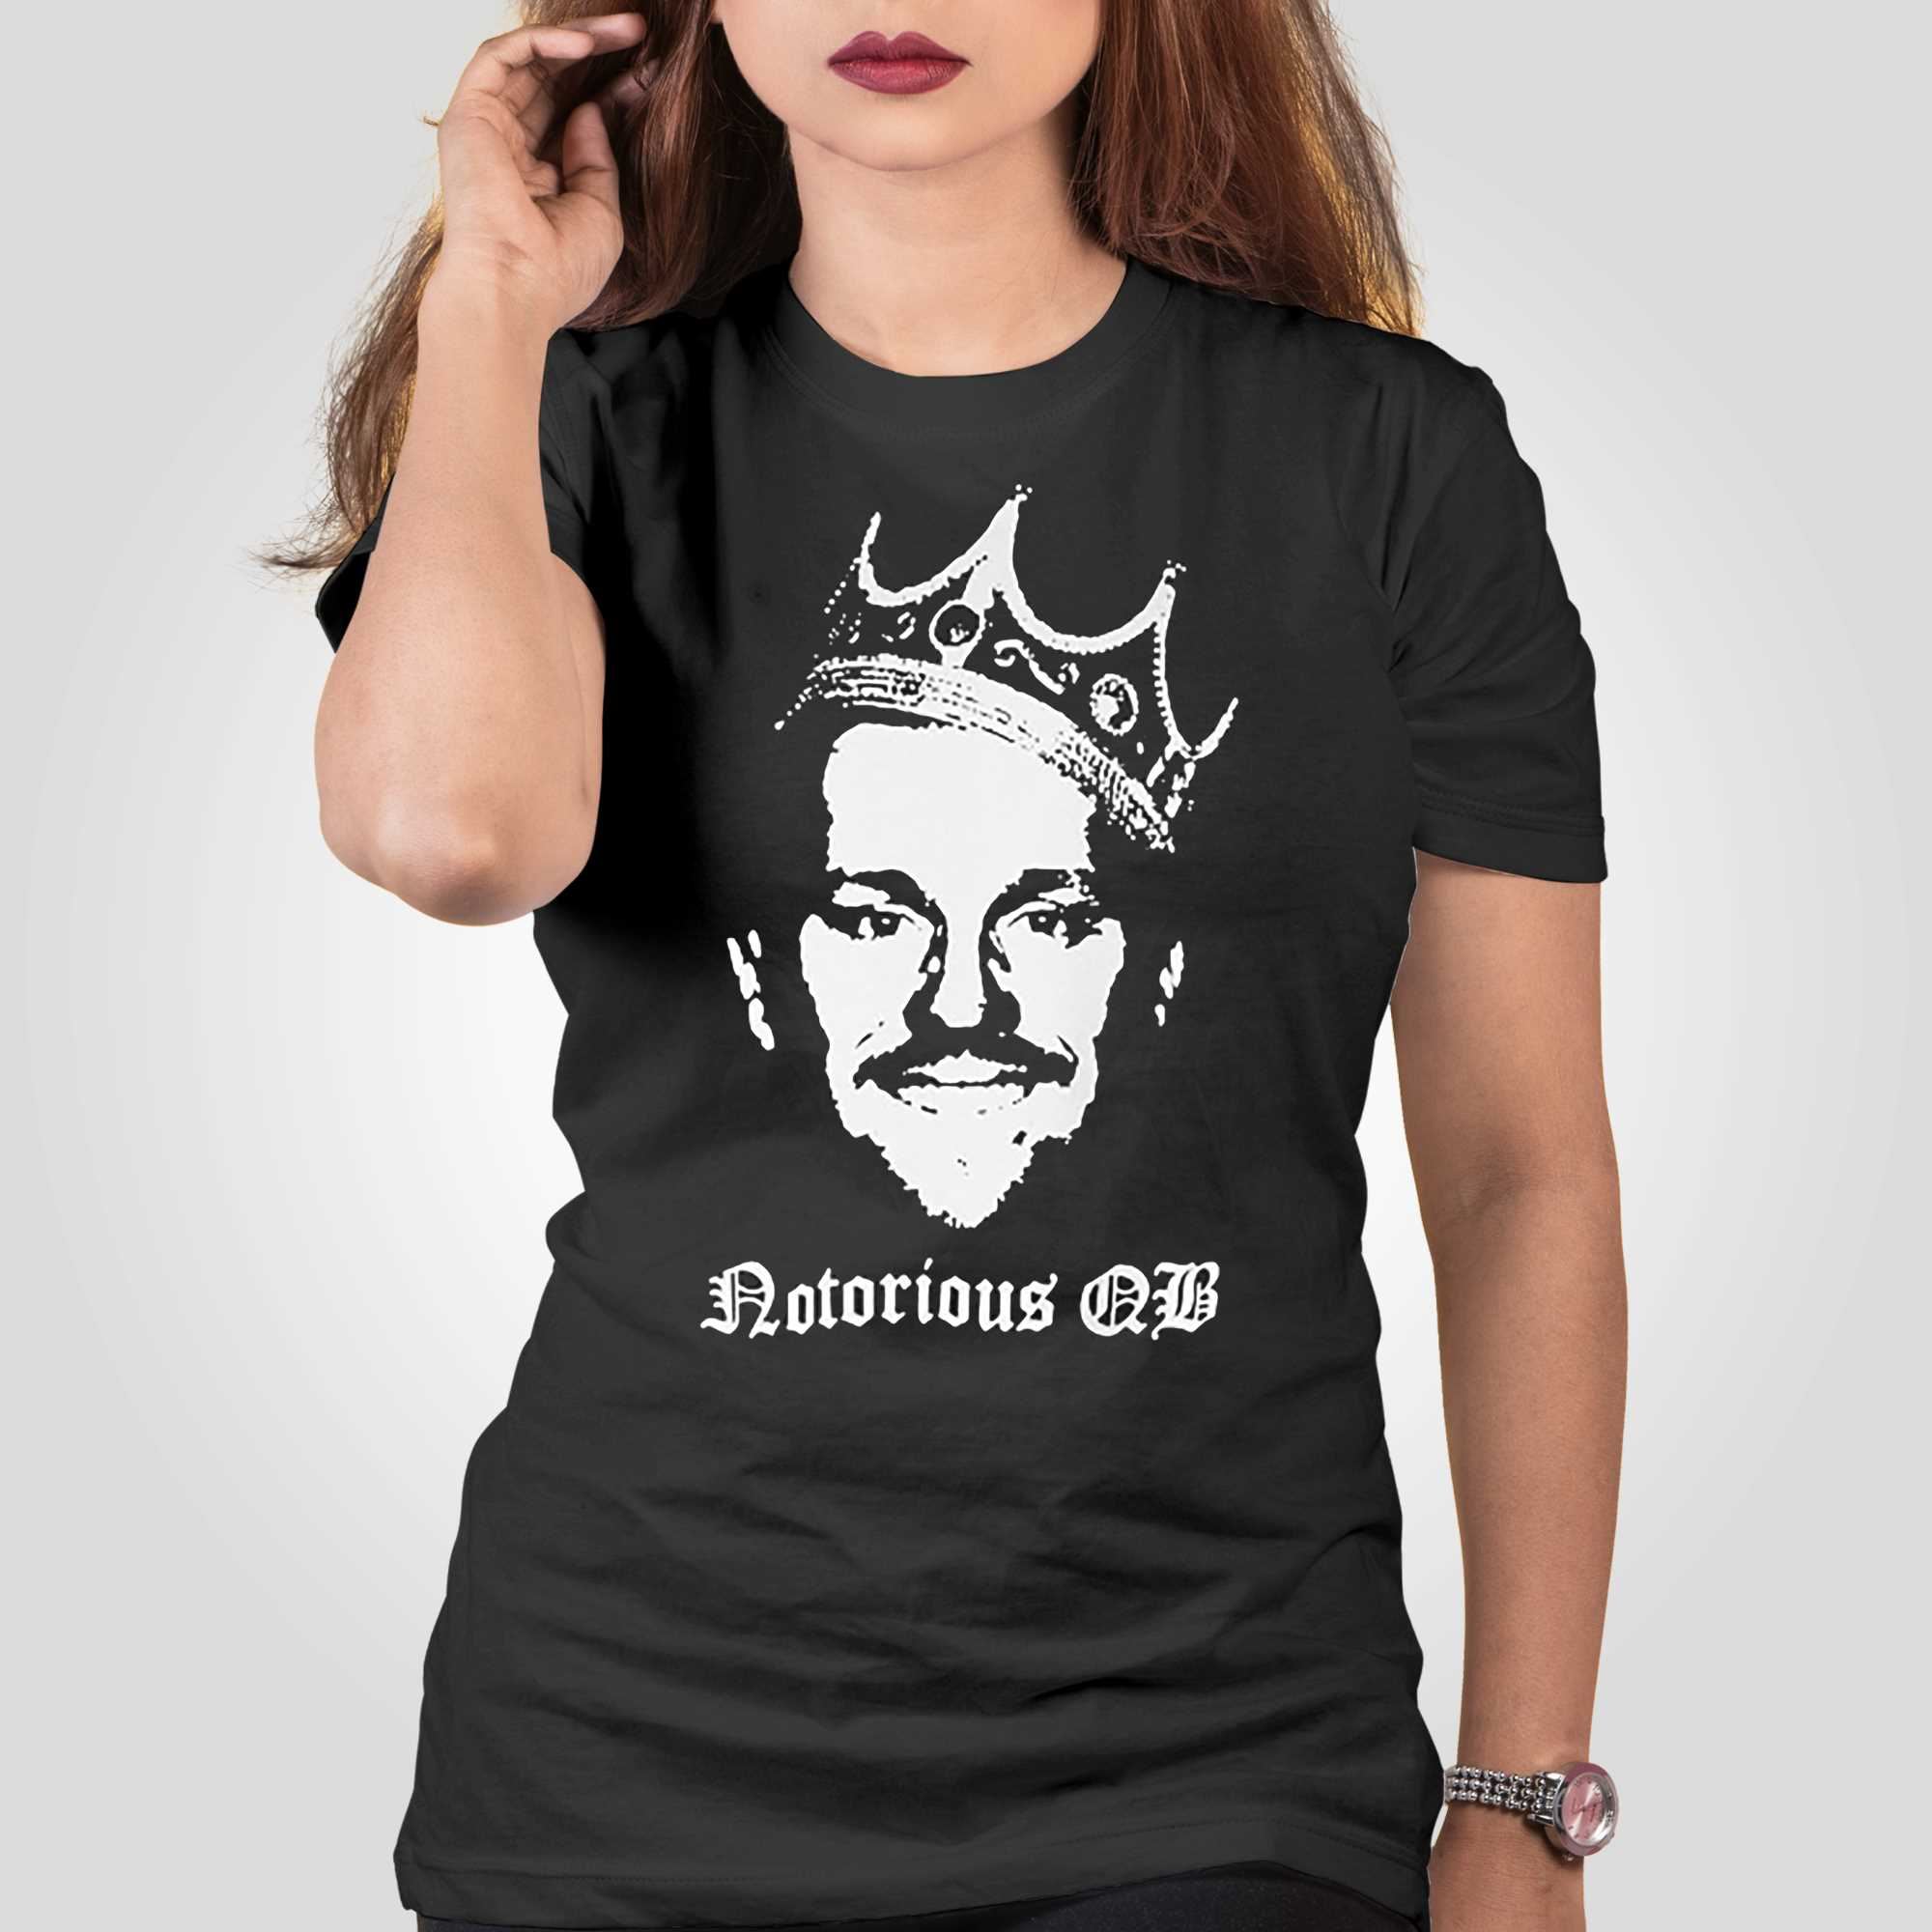 Dawson Knox Notorious Qb T-shirt - Shibtee Clothing